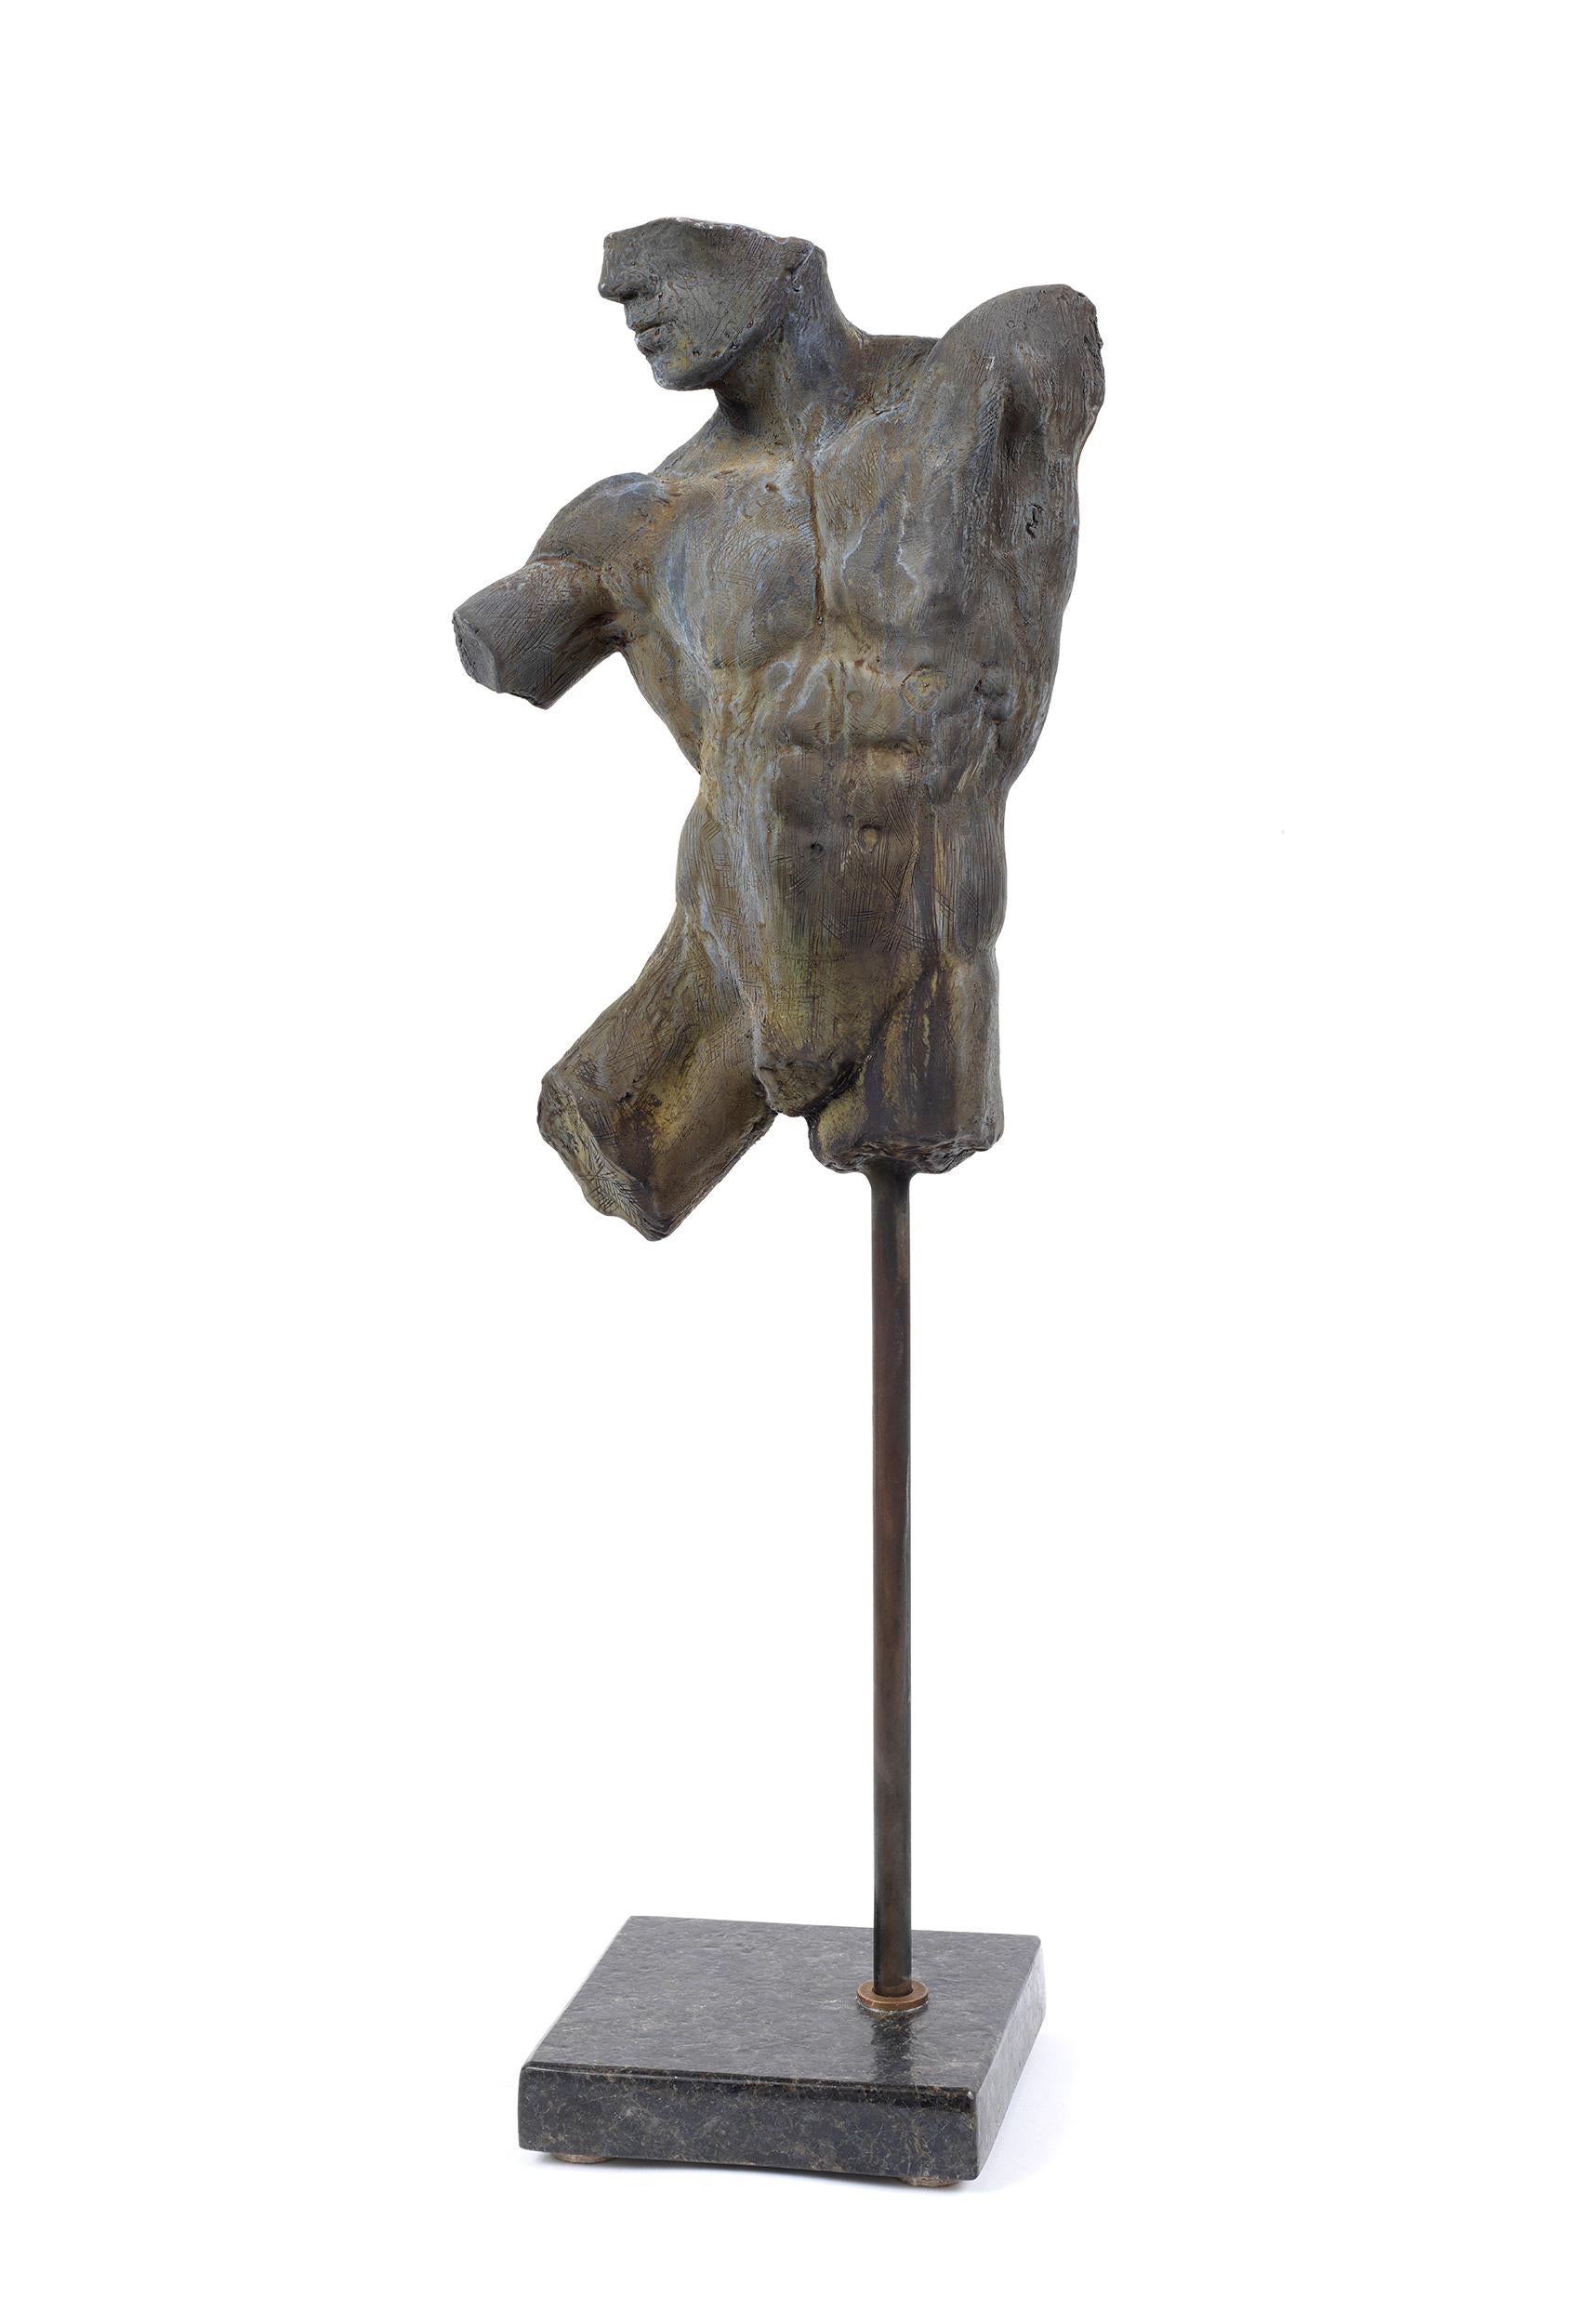 Dies ist eine außergewöhnliche Bronzeskulptur eines klassischen männlichen Aktfragments des Künstlers Dean Kugler mit Grünspanpatina. Die Liebe zum Detail und das vollständige Verständnis der menschlichen Figur sind offensichtlich. Die Skulptur ist